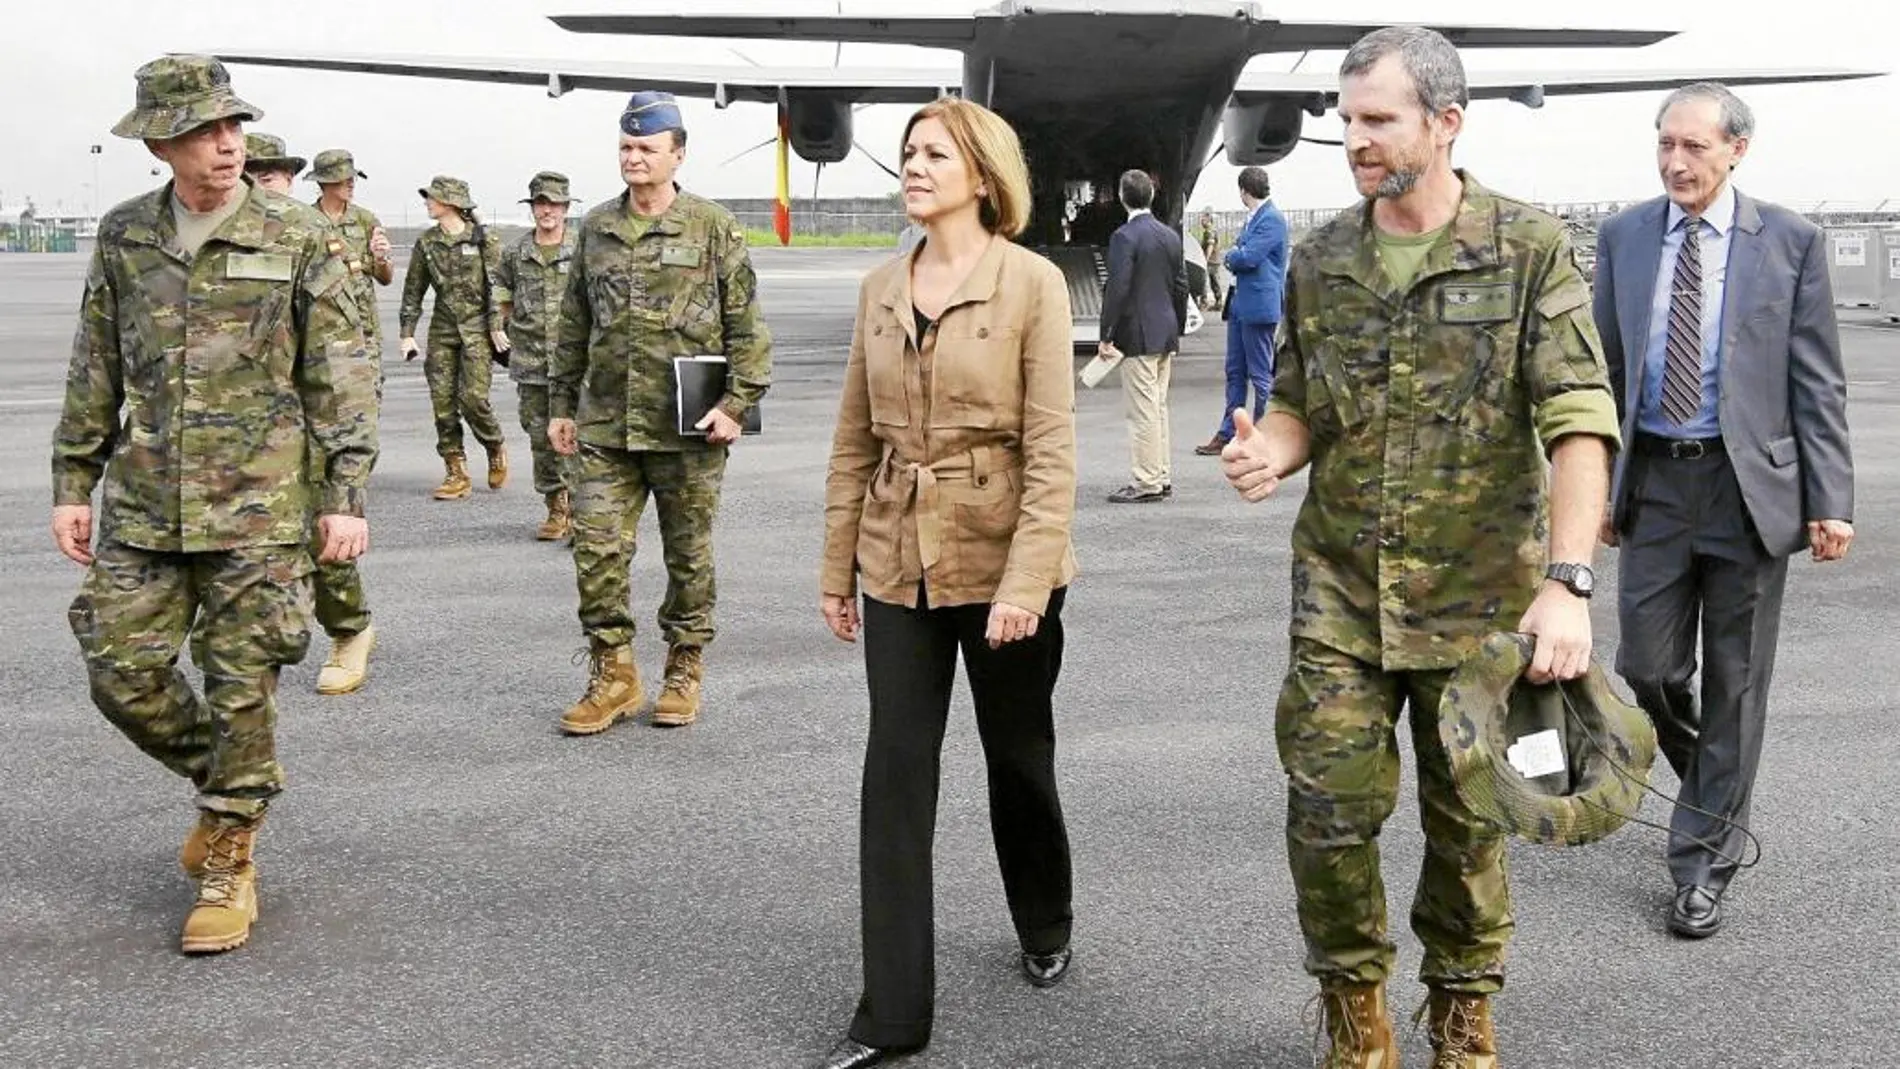 La ministra de Defensa, Cospedal, visitó ayer a las tropas españolas en República Centroafricana